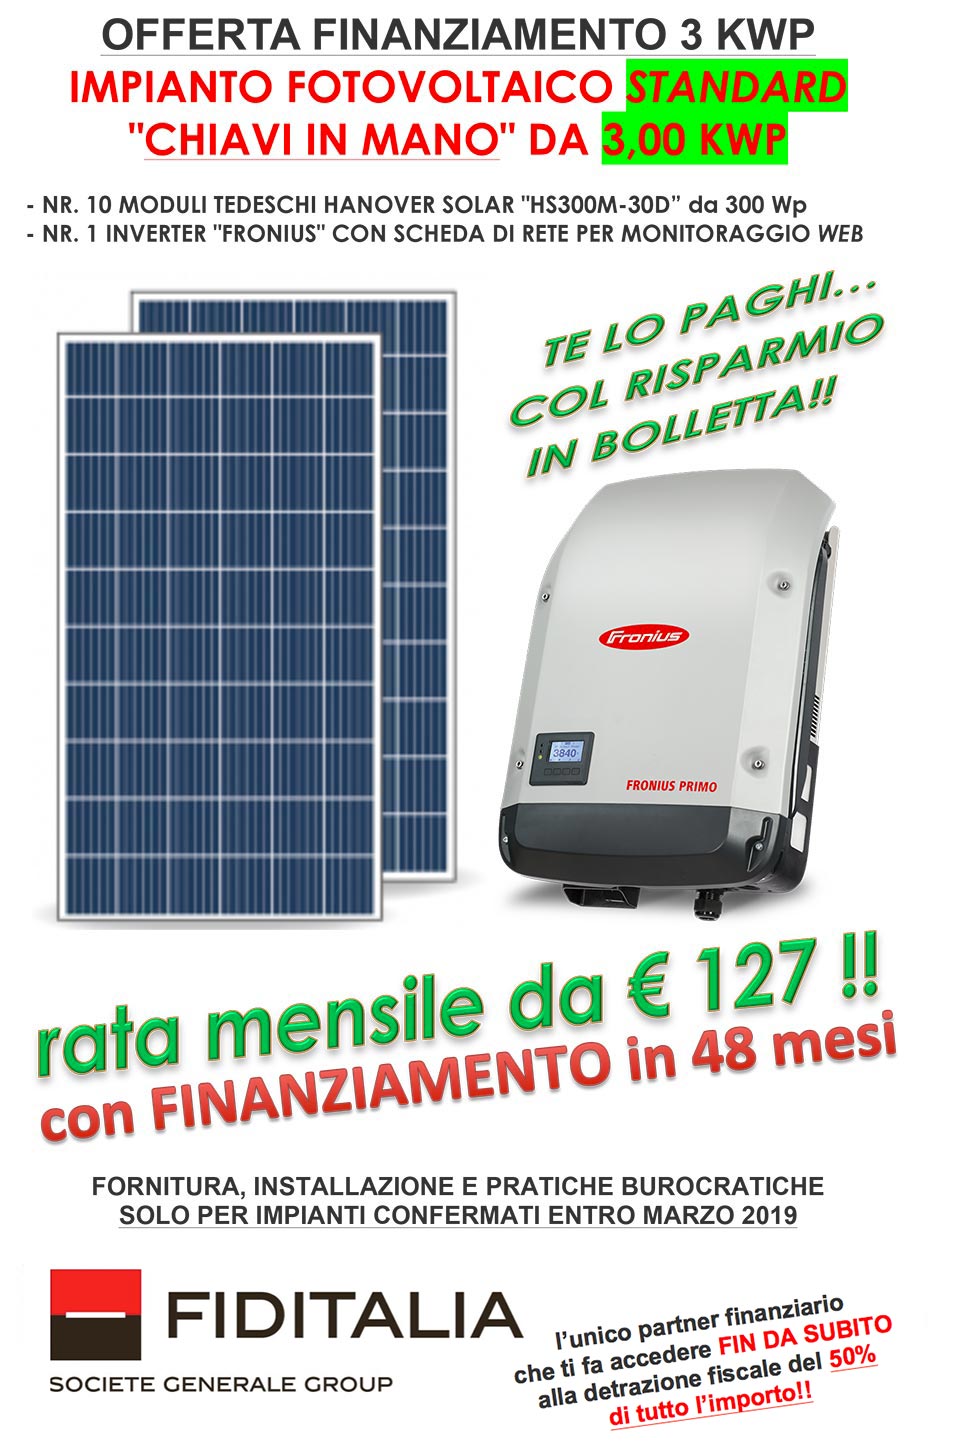 Offerta finanziamento fotovoltaico